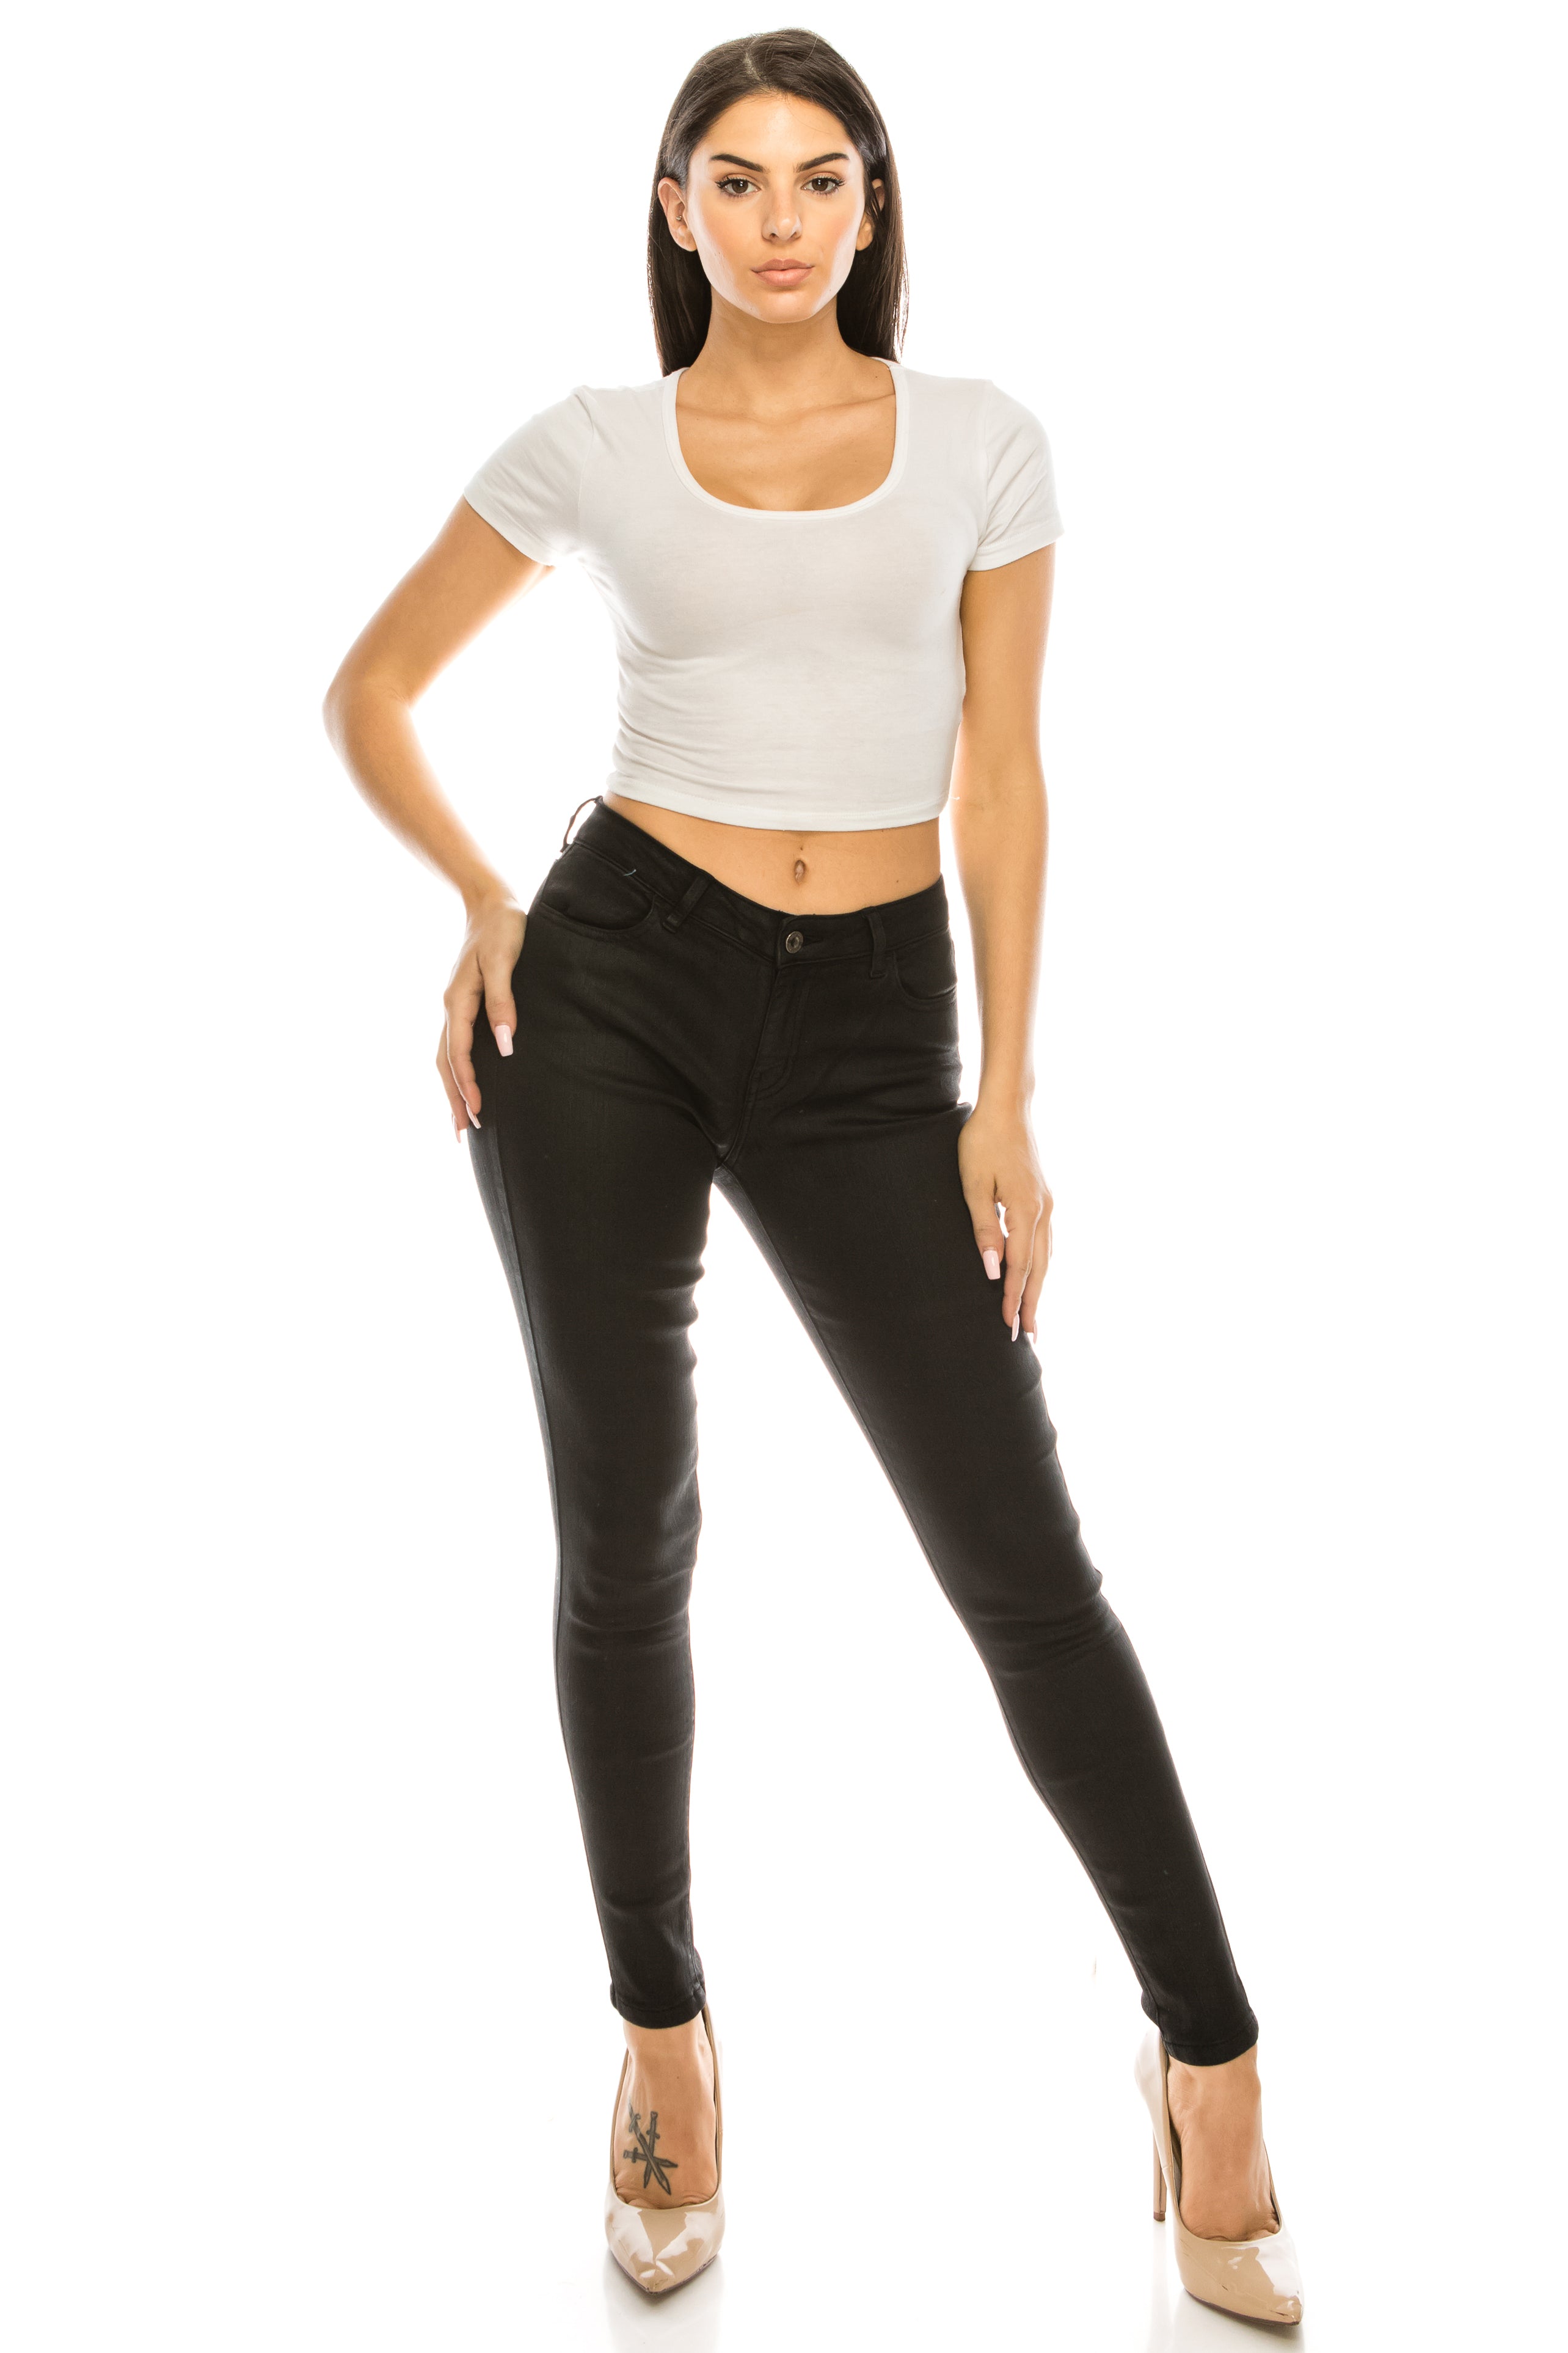 1249 Women's Mid Rise Basic Black Skinny Jeans